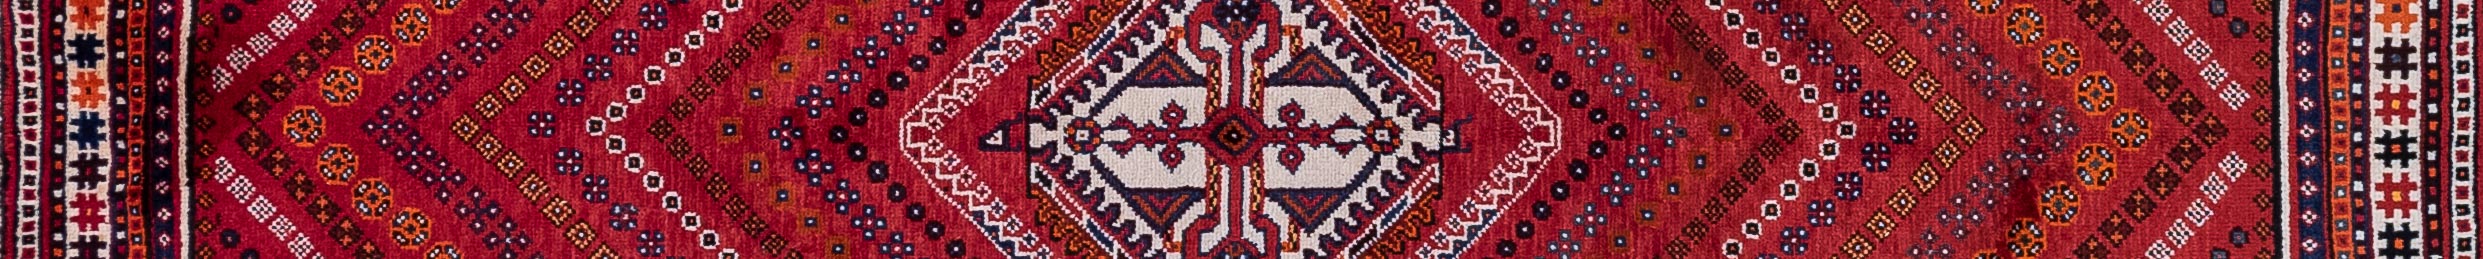 Shiraz Persian Carpet Rug N1Carpet Canada Montreal Tapis Persan 1150